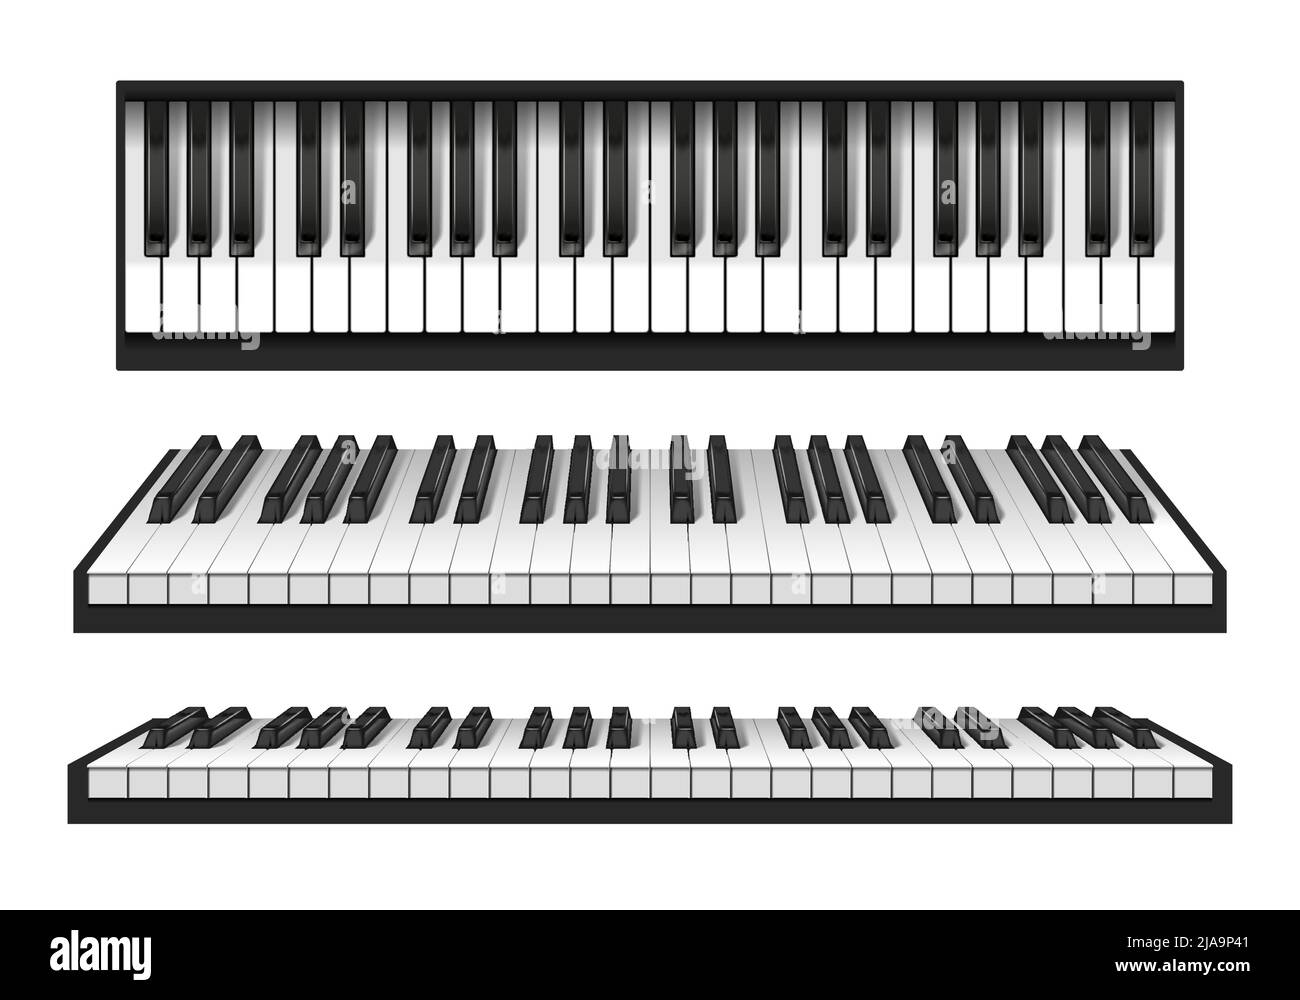 Claviers de piano classique jeu réaliste isolé sur fond blanc illustration vectorielle Illustration de Vecteur